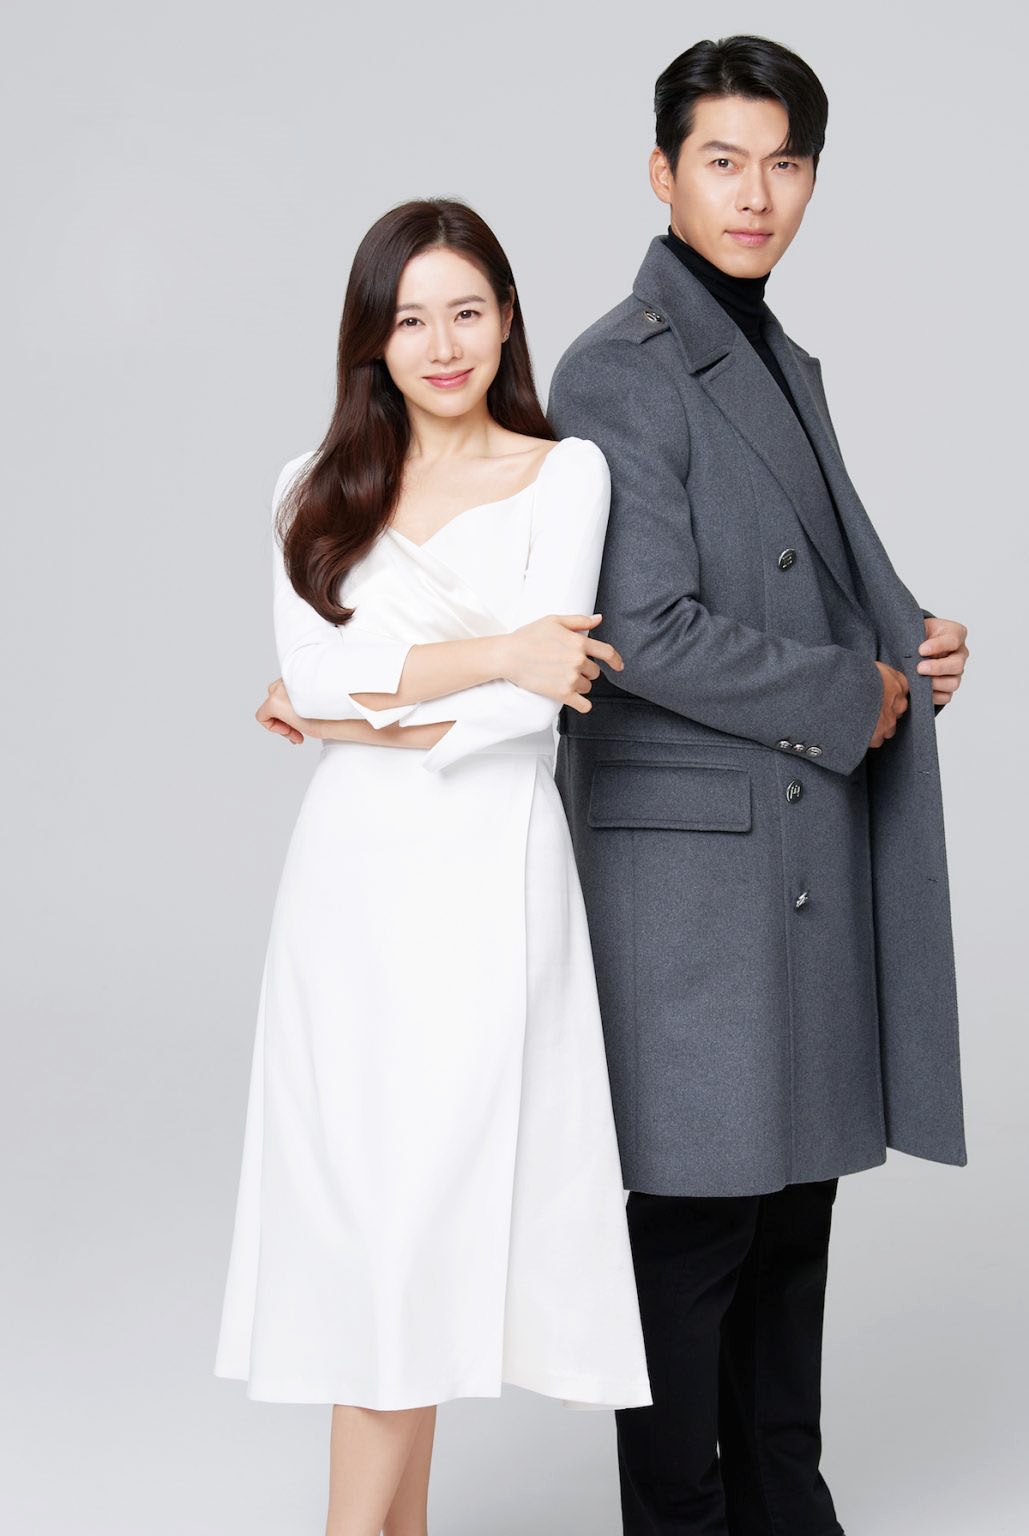 Sự thật về bức ảnh Son Yejin diện váy rộng lộ bụng bầu, làm dấy lên tin đồn mang thai con đầu lòng với Hyun Bin